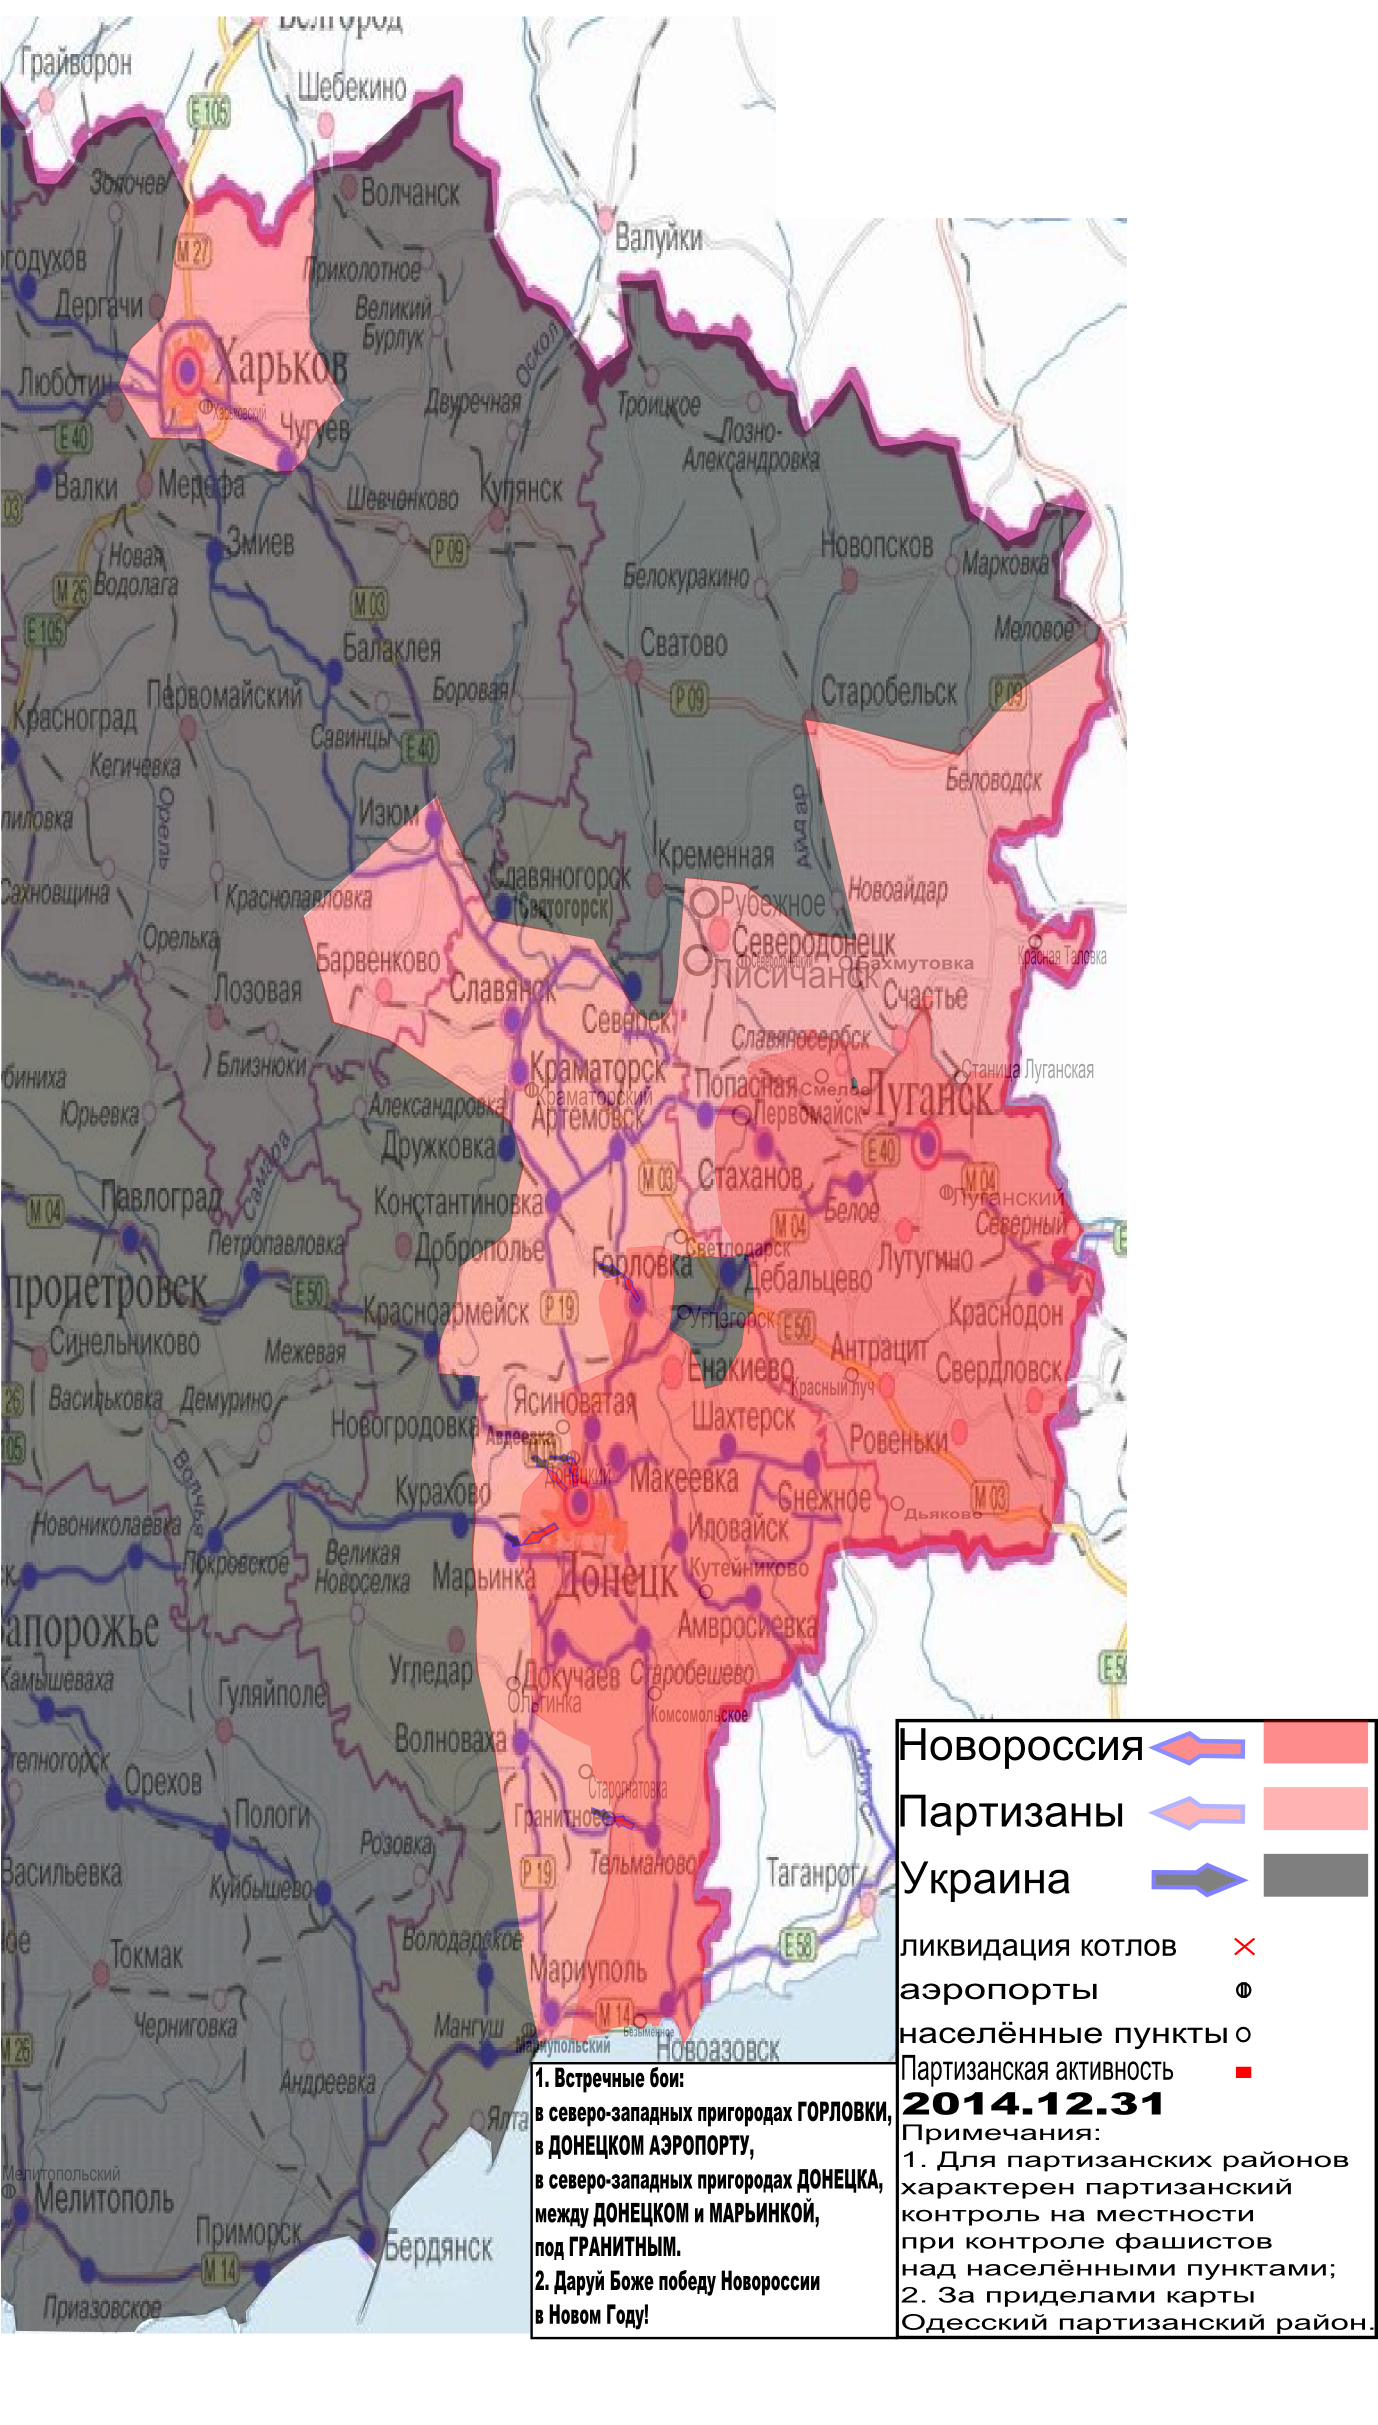 Карта боевых действий и событий в Новороссии с обозначением зон партизанской активности за 31 декабря 2014